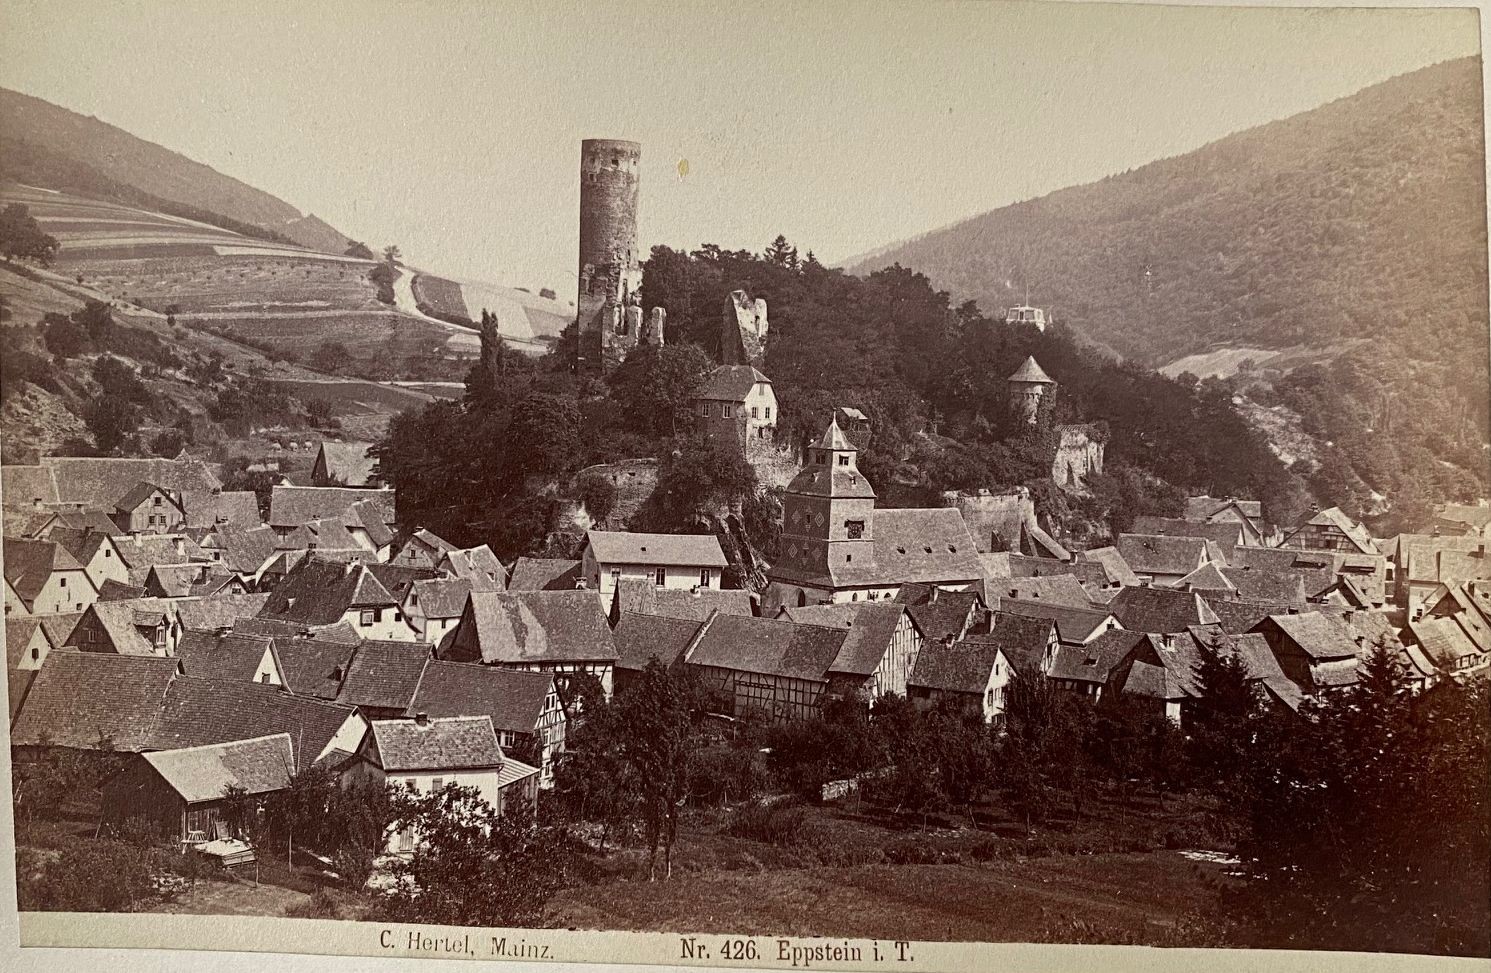 Fotografie, Carl Hertel No. 426, Eppstein i. T., ca. 1885 (Taunus-Rhein-Main - Regionalgeschichtliche Sammlung Dr. Stefan Naas CC BY-NC-SA)